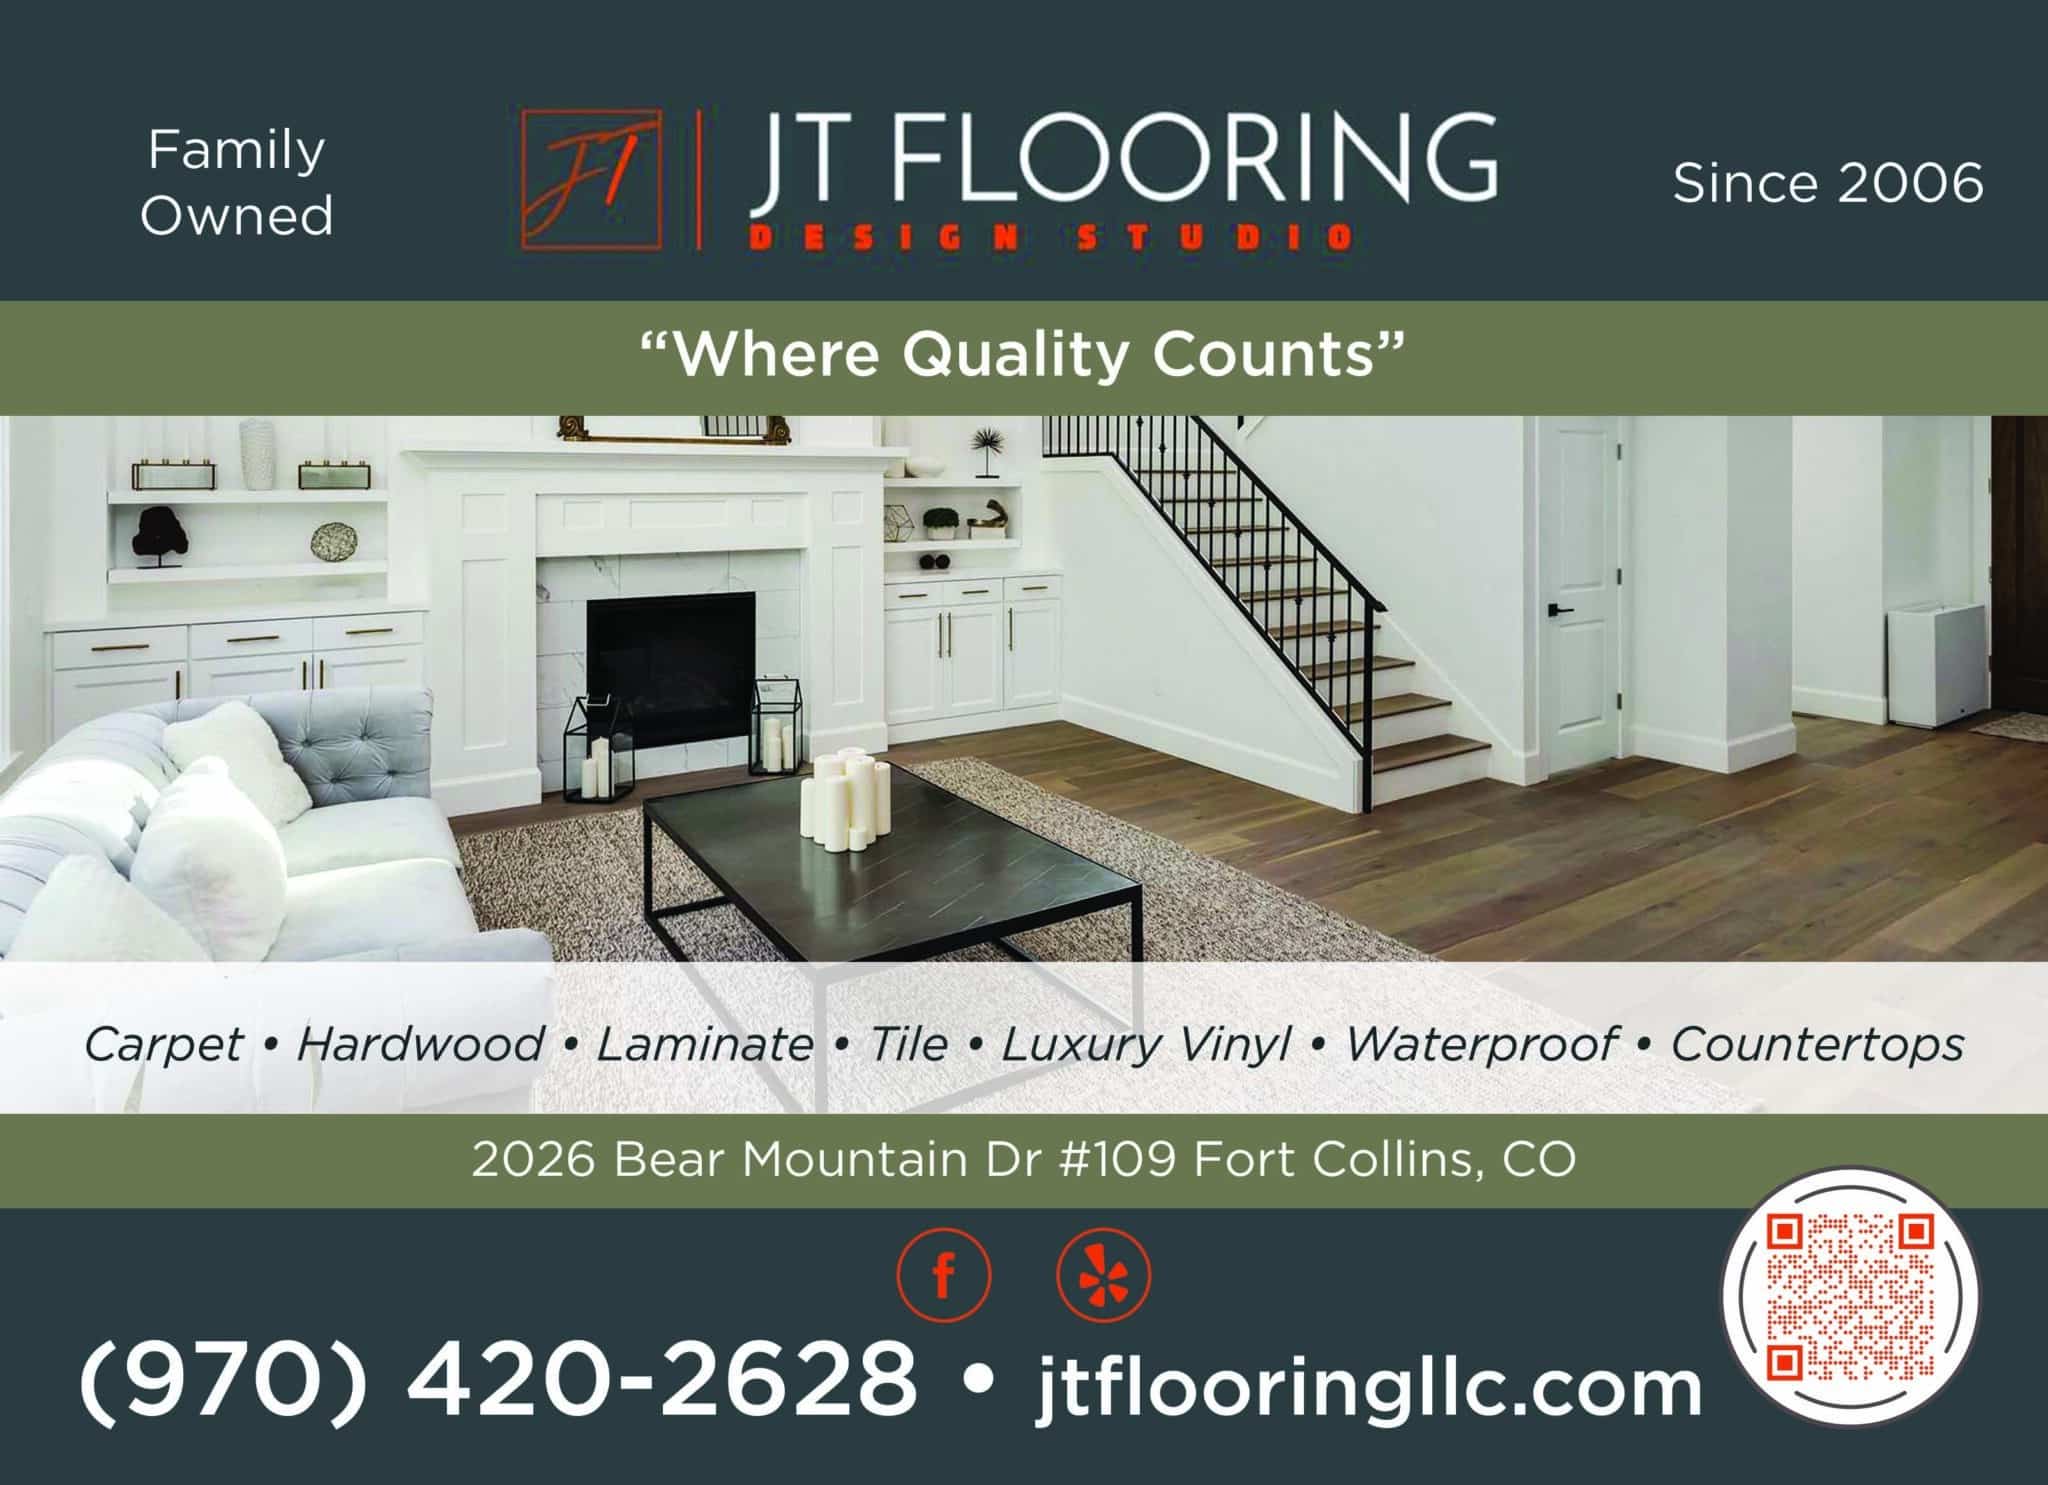 JT Flooring